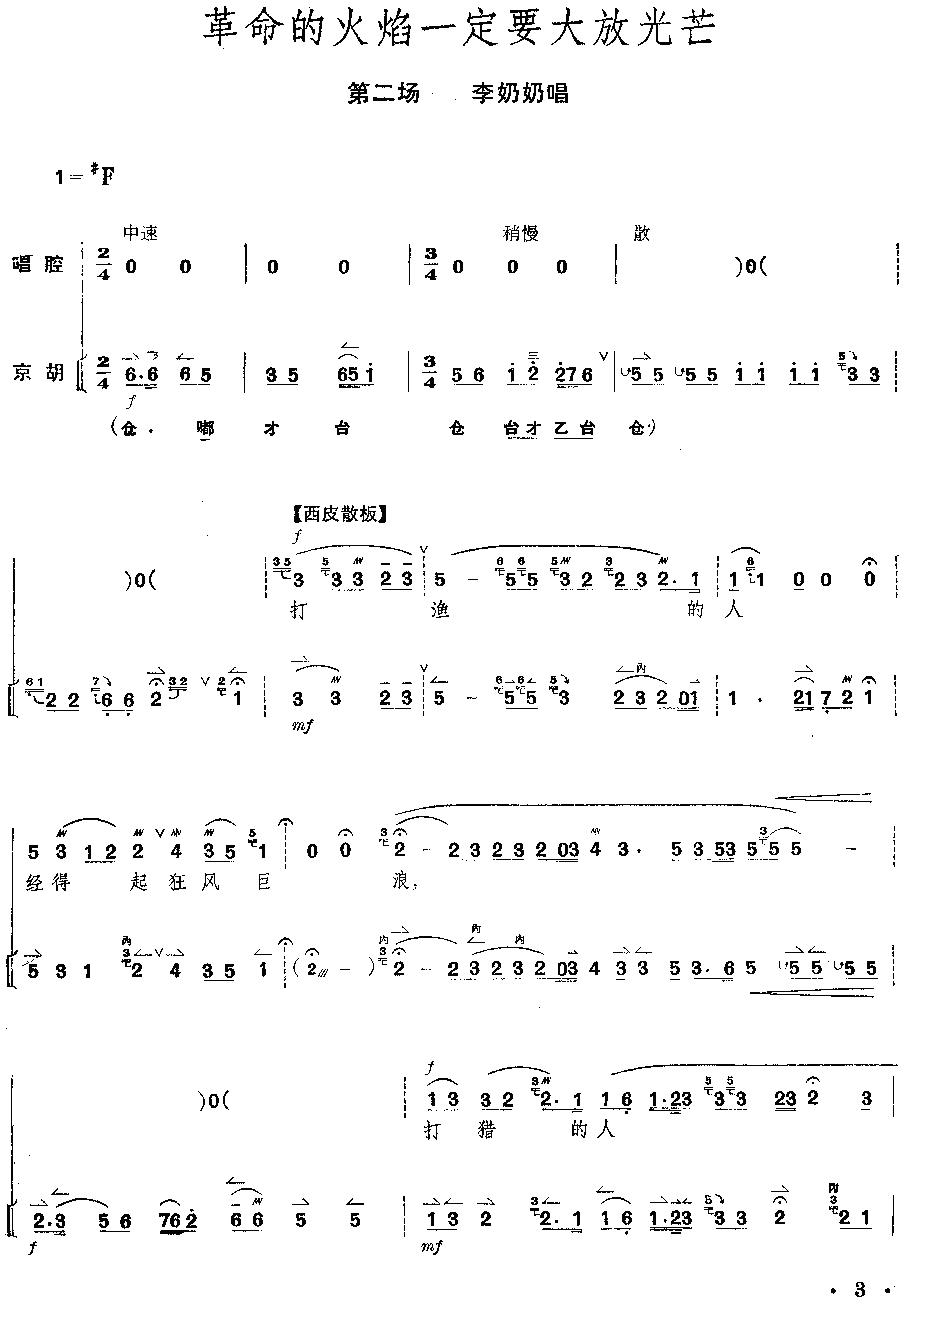 京剧《红灯记》全剧--（唱谱+琴谱）第1-5页总谱（图4）